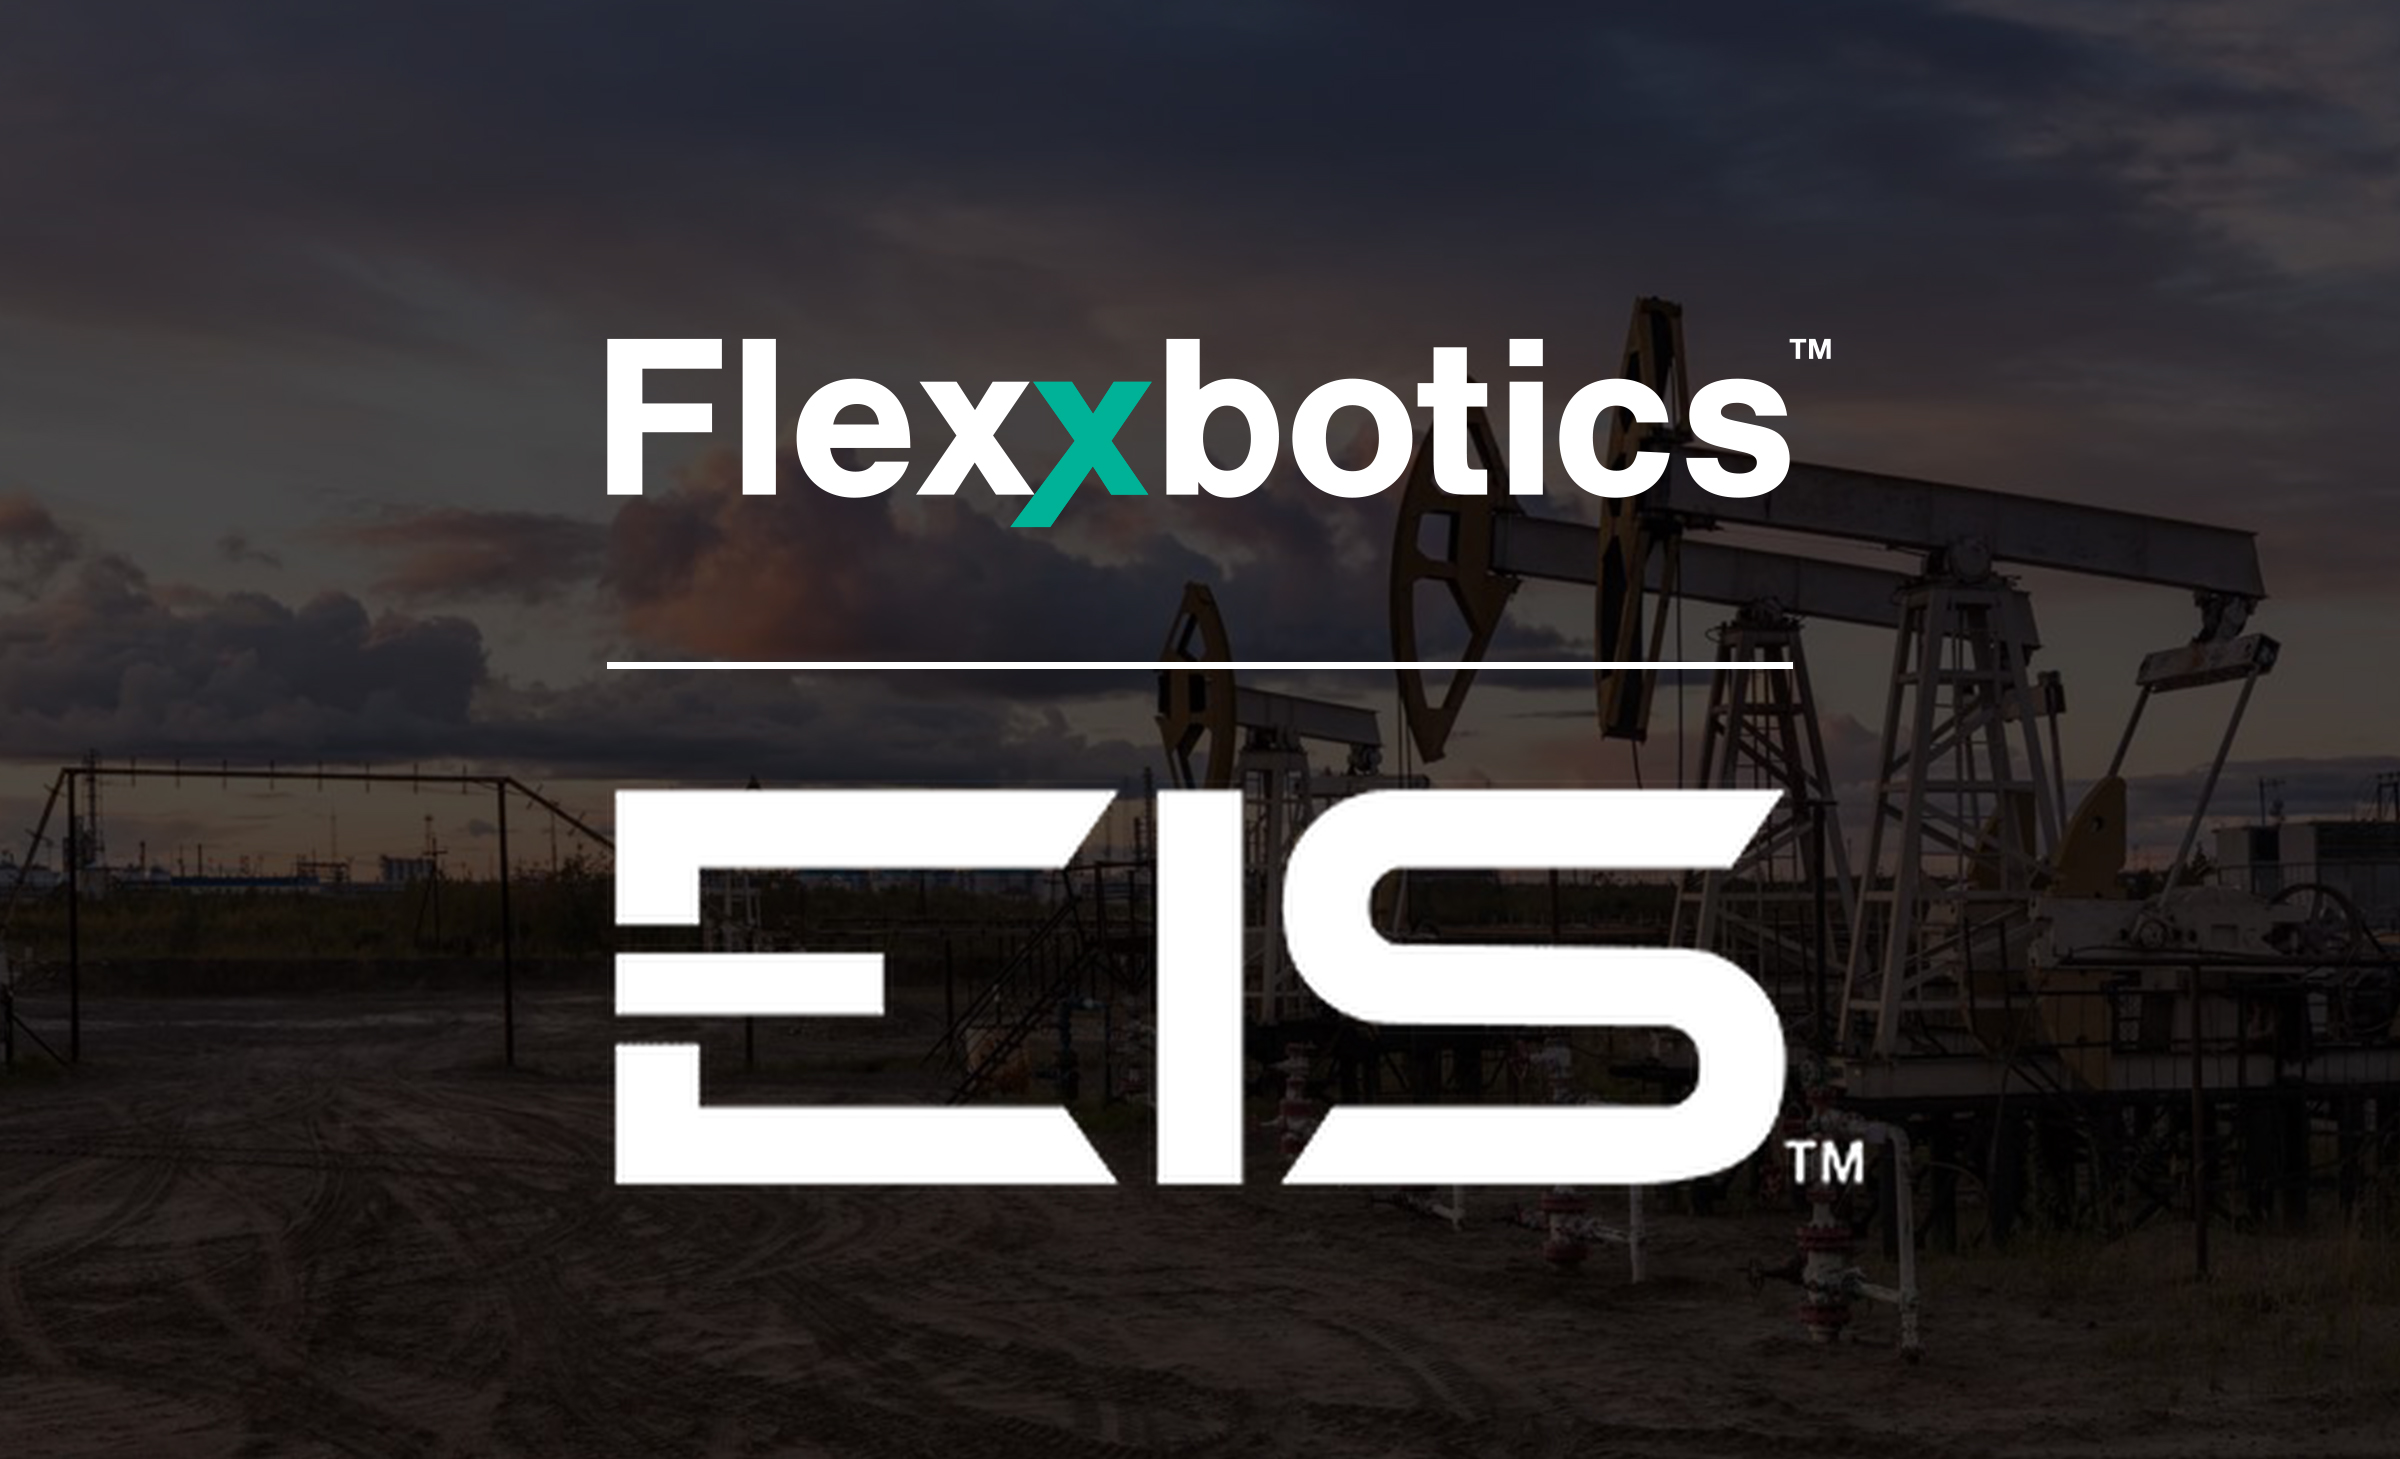 EIS Adopts Flexxbotics